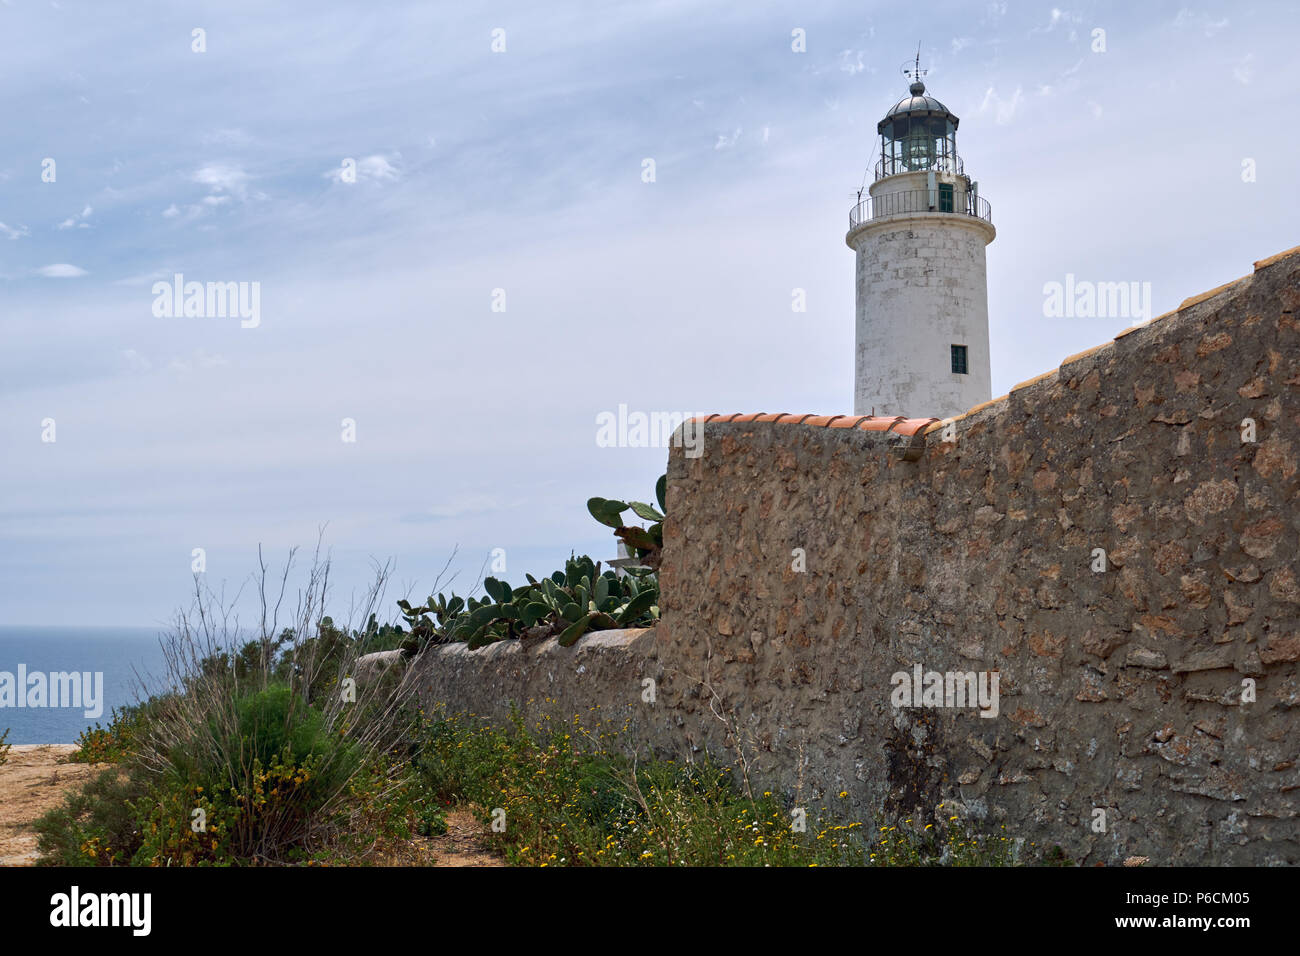 La Mola Leuchtturm der Insel Formentera. Dieser Leuchtturm ist berühmt, weil, so die Legende, es inspirierte Julio Verne für seine Romane "Hécto Stockfoto